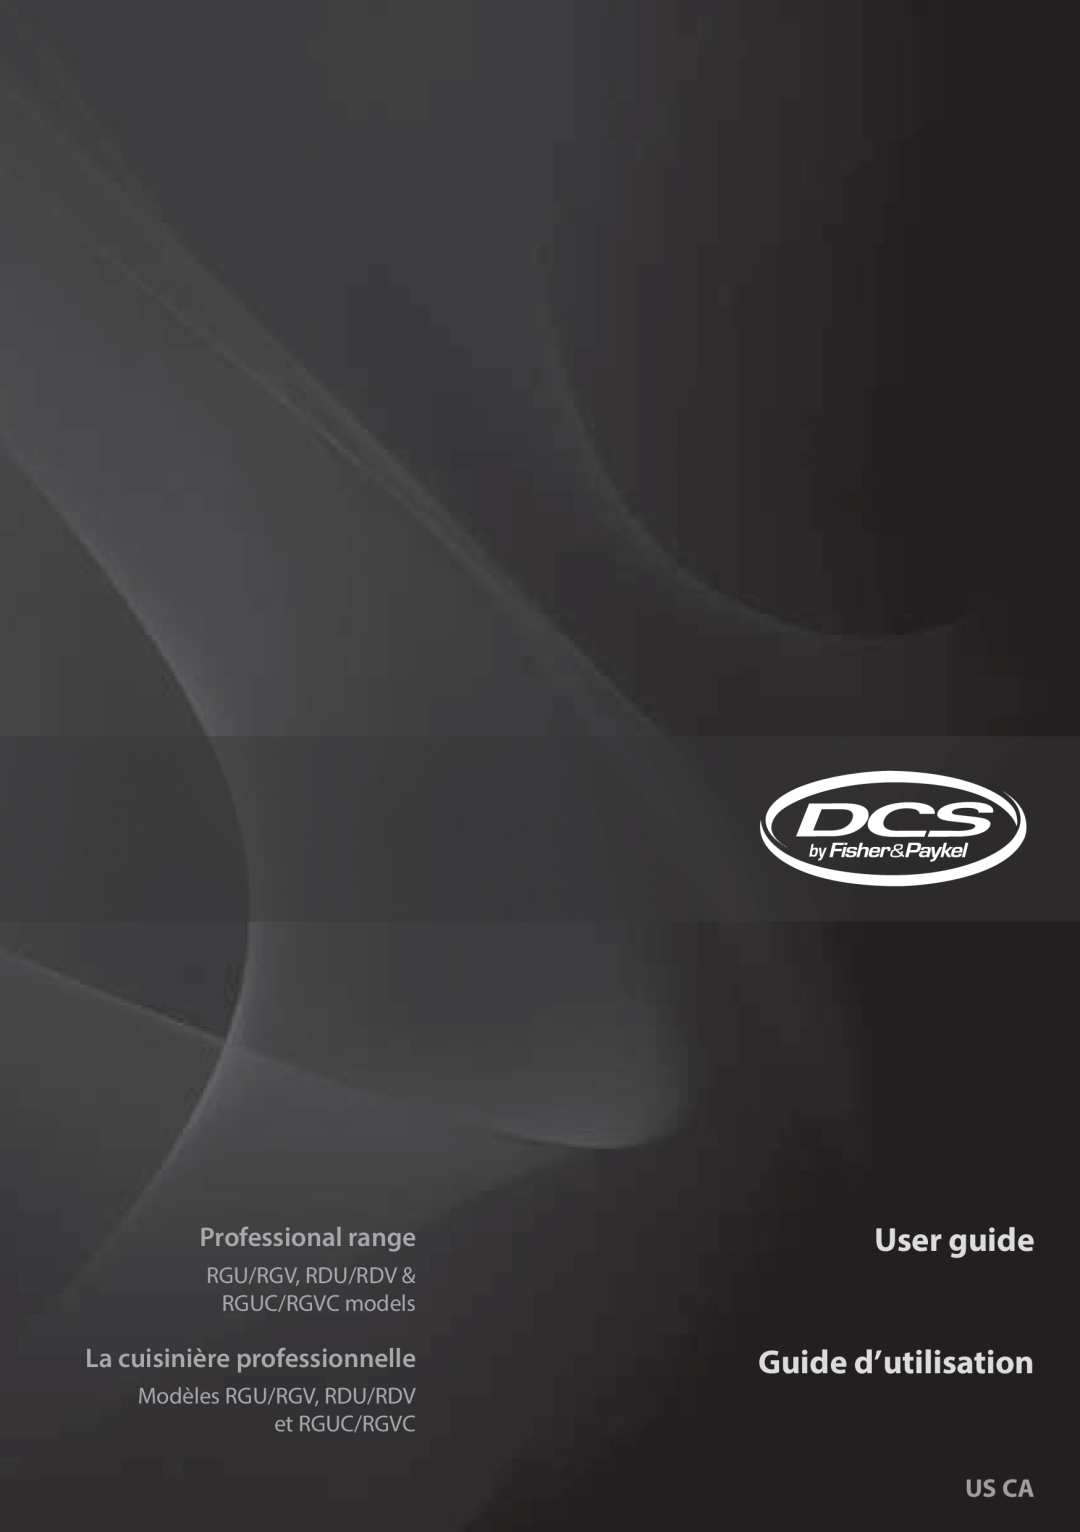 DCS RGY/RGV, RGUC/RGVC manual User guide Guide d’utilisation, Professional range, La cuisinière professionnelle, Us Ca 